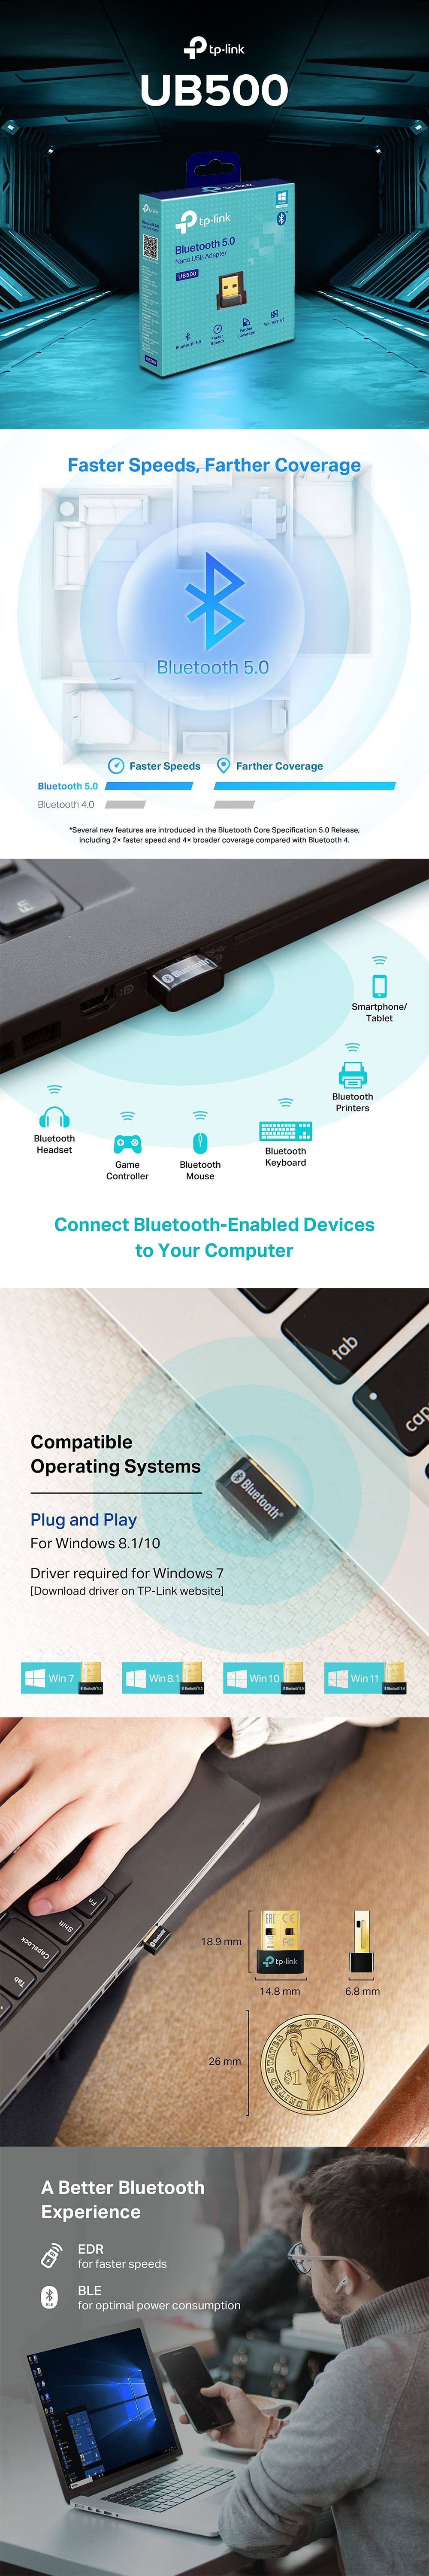 UB500, Adaptateur USB Bluetooth 5.0 Nano